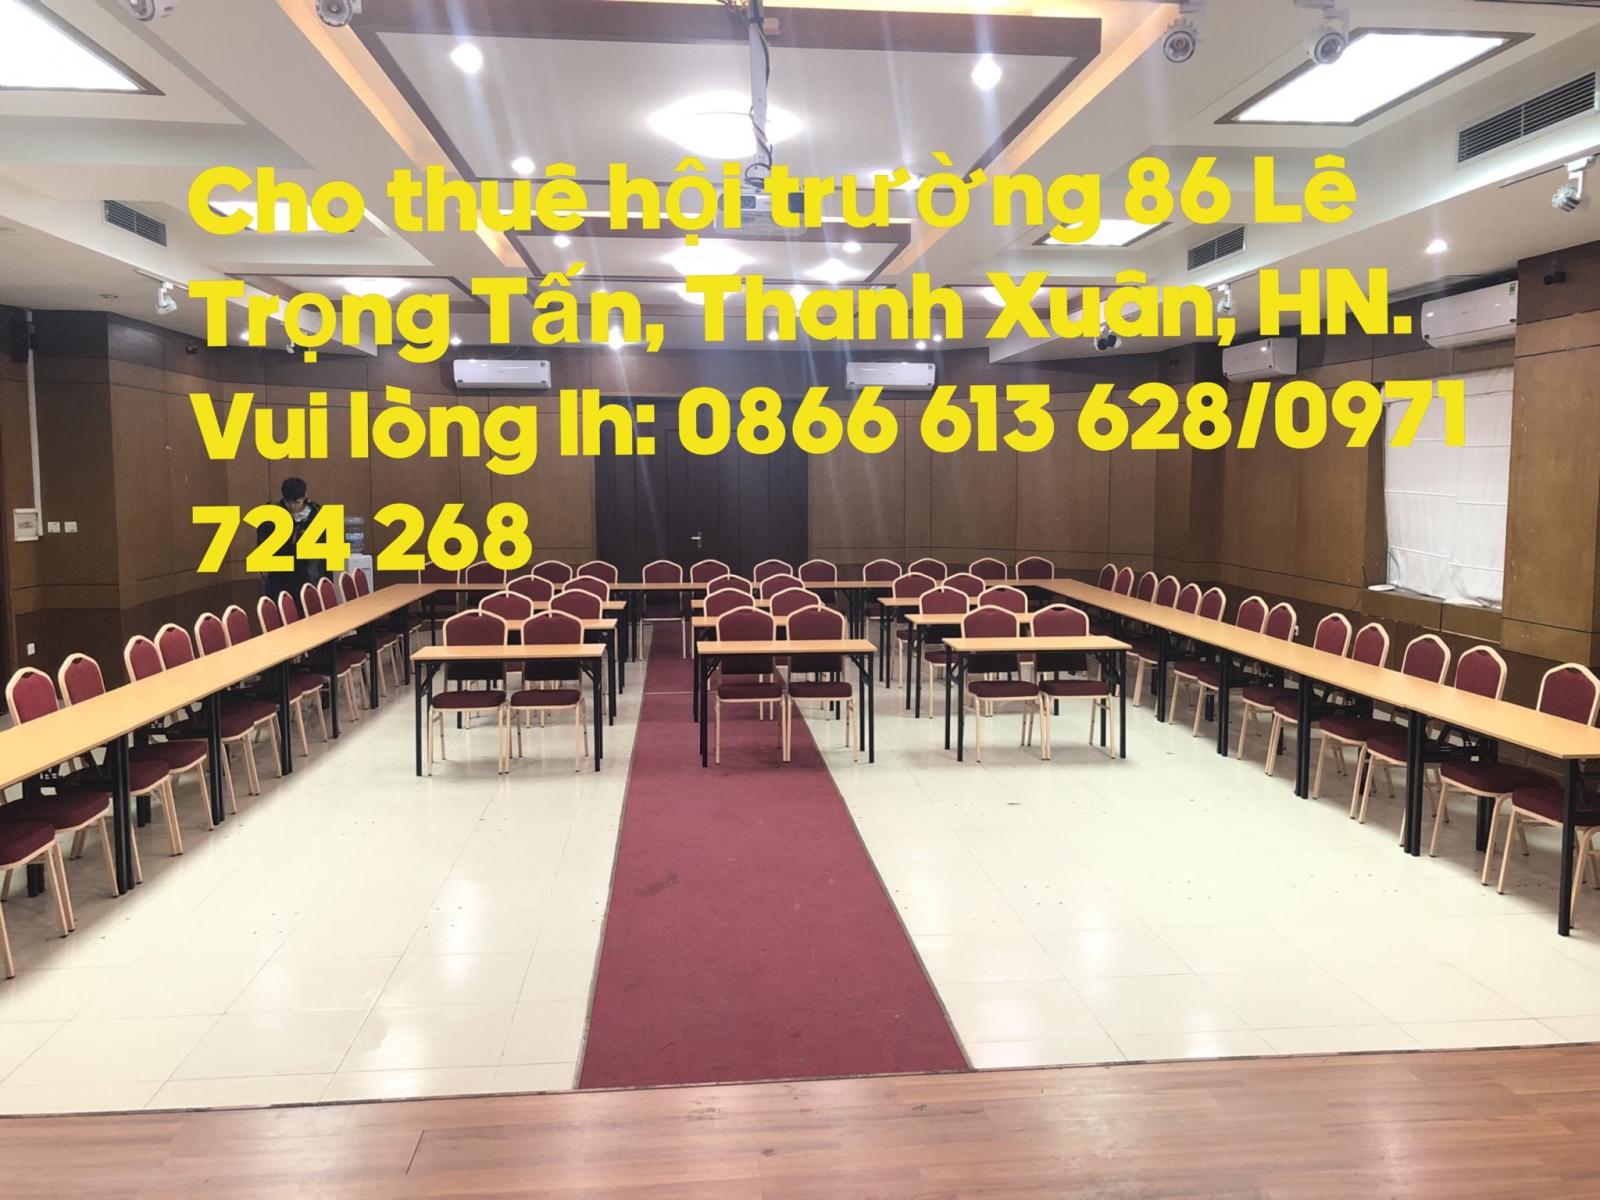 Cho thuê hội trường, tổ chức sự kiện 50 - 300 chỗ ngồi Quận Thanh Xuân. Lh: 0971 724 268
 11288167